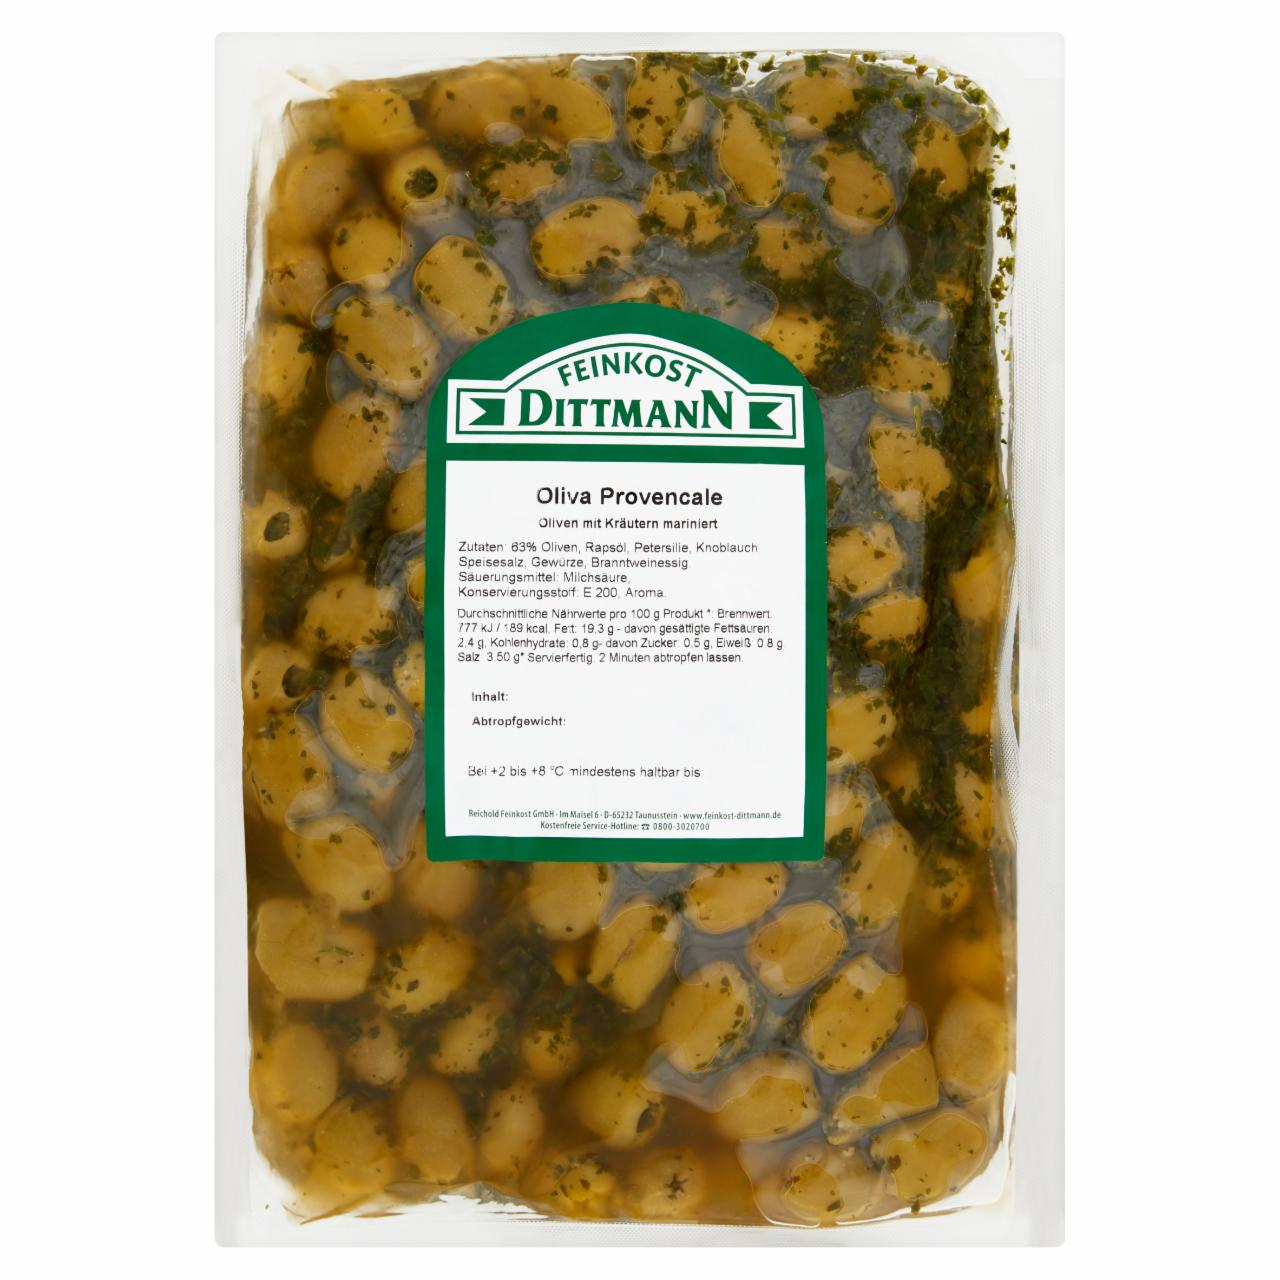 Képek - Feinkost Dittmann zöld olívabogyó provenszi fűszerekkel, repceolajban 1,4 kg